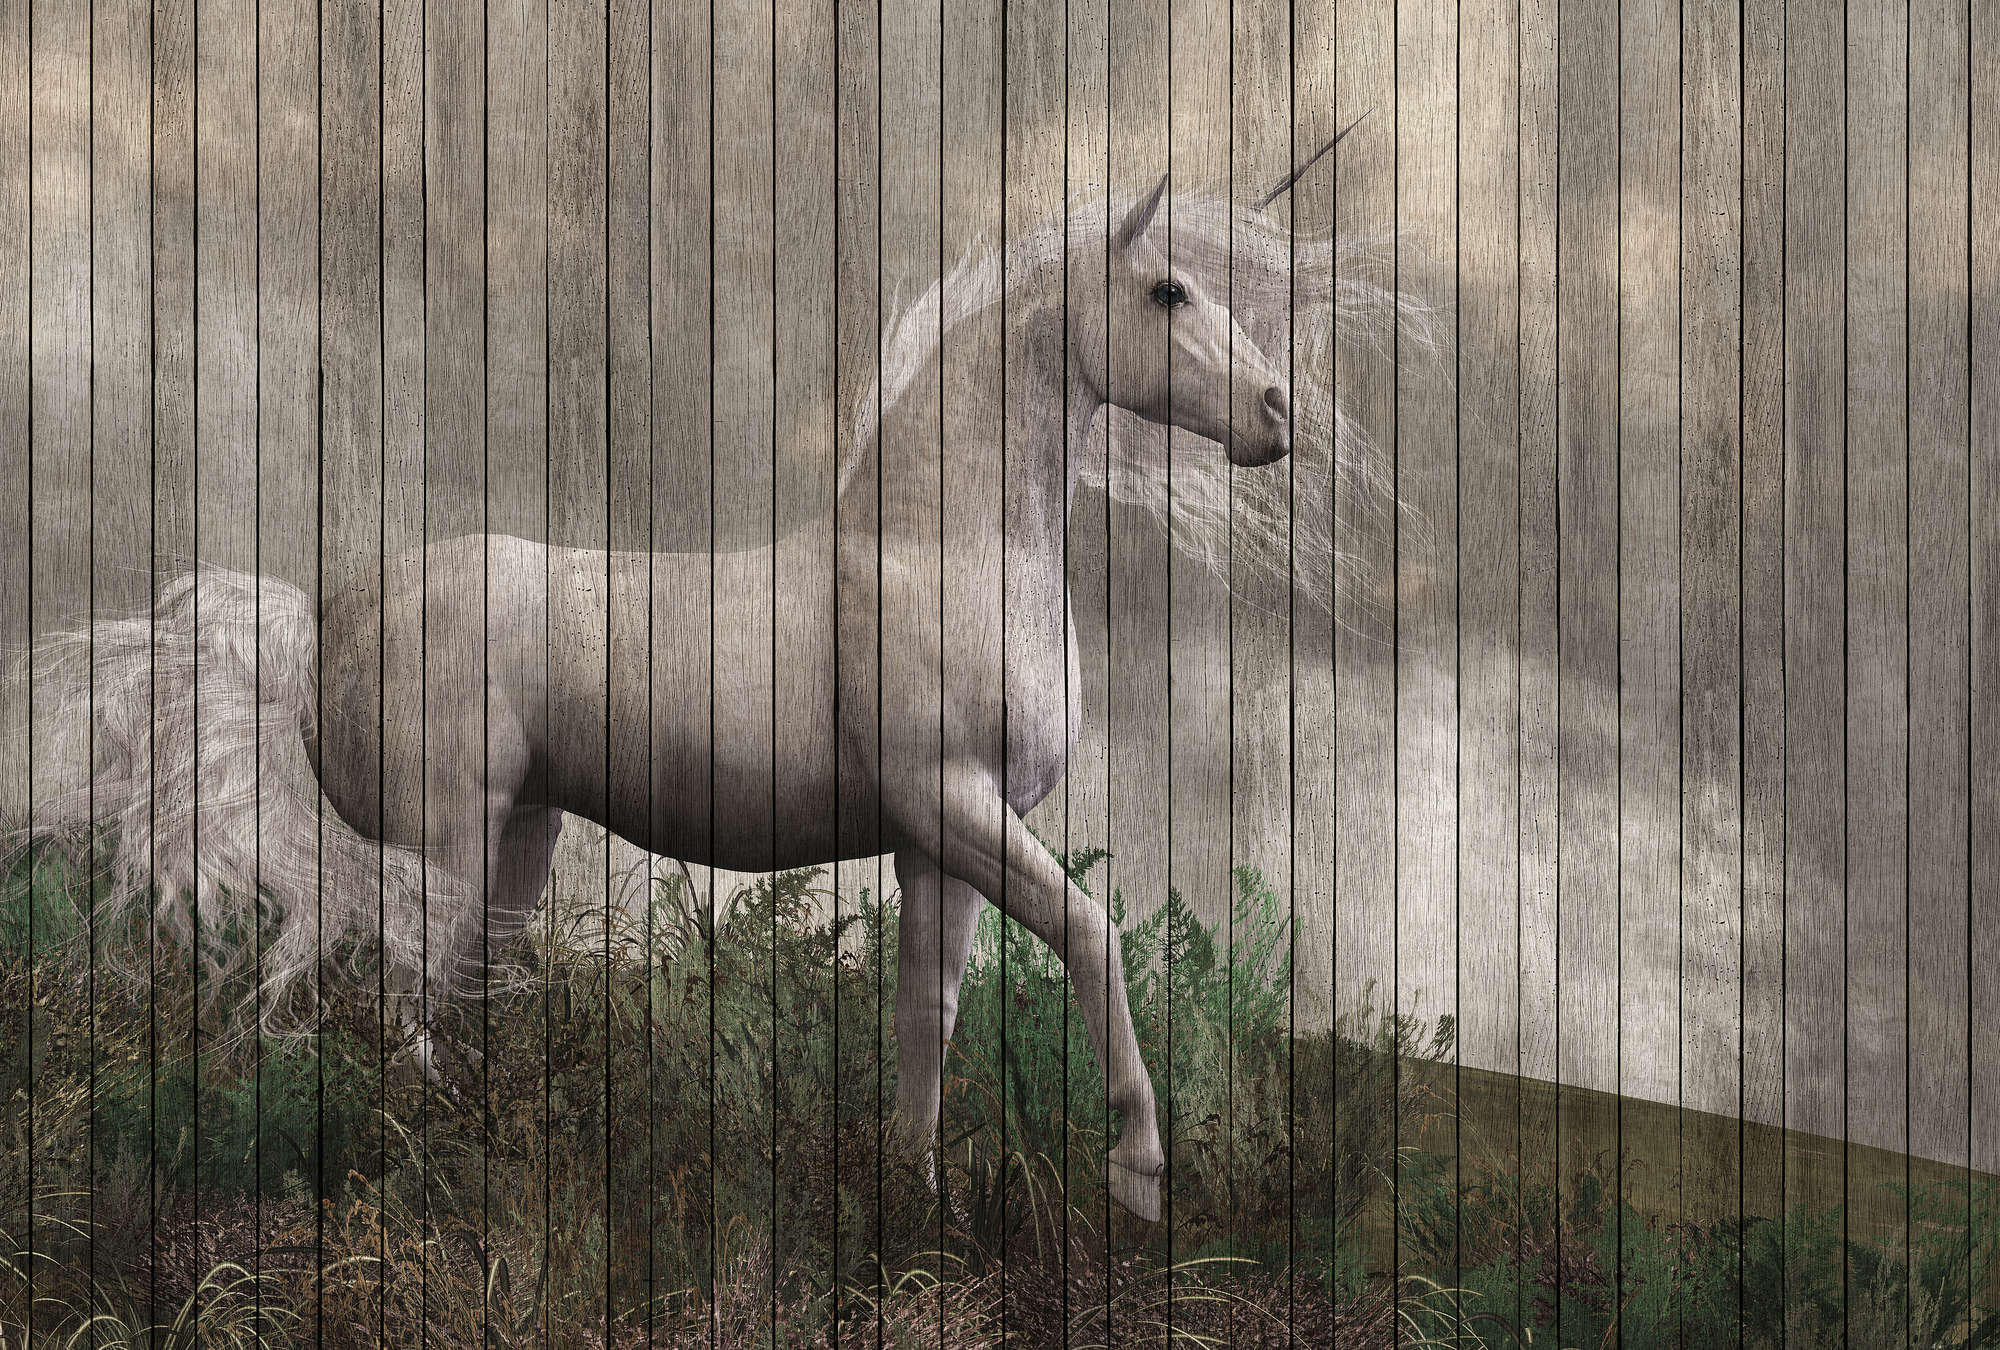             Fantasy 3 - Carta da parati unicorno con ottica in legno - Beige, Marrone | Premium Smooth Fleece
        